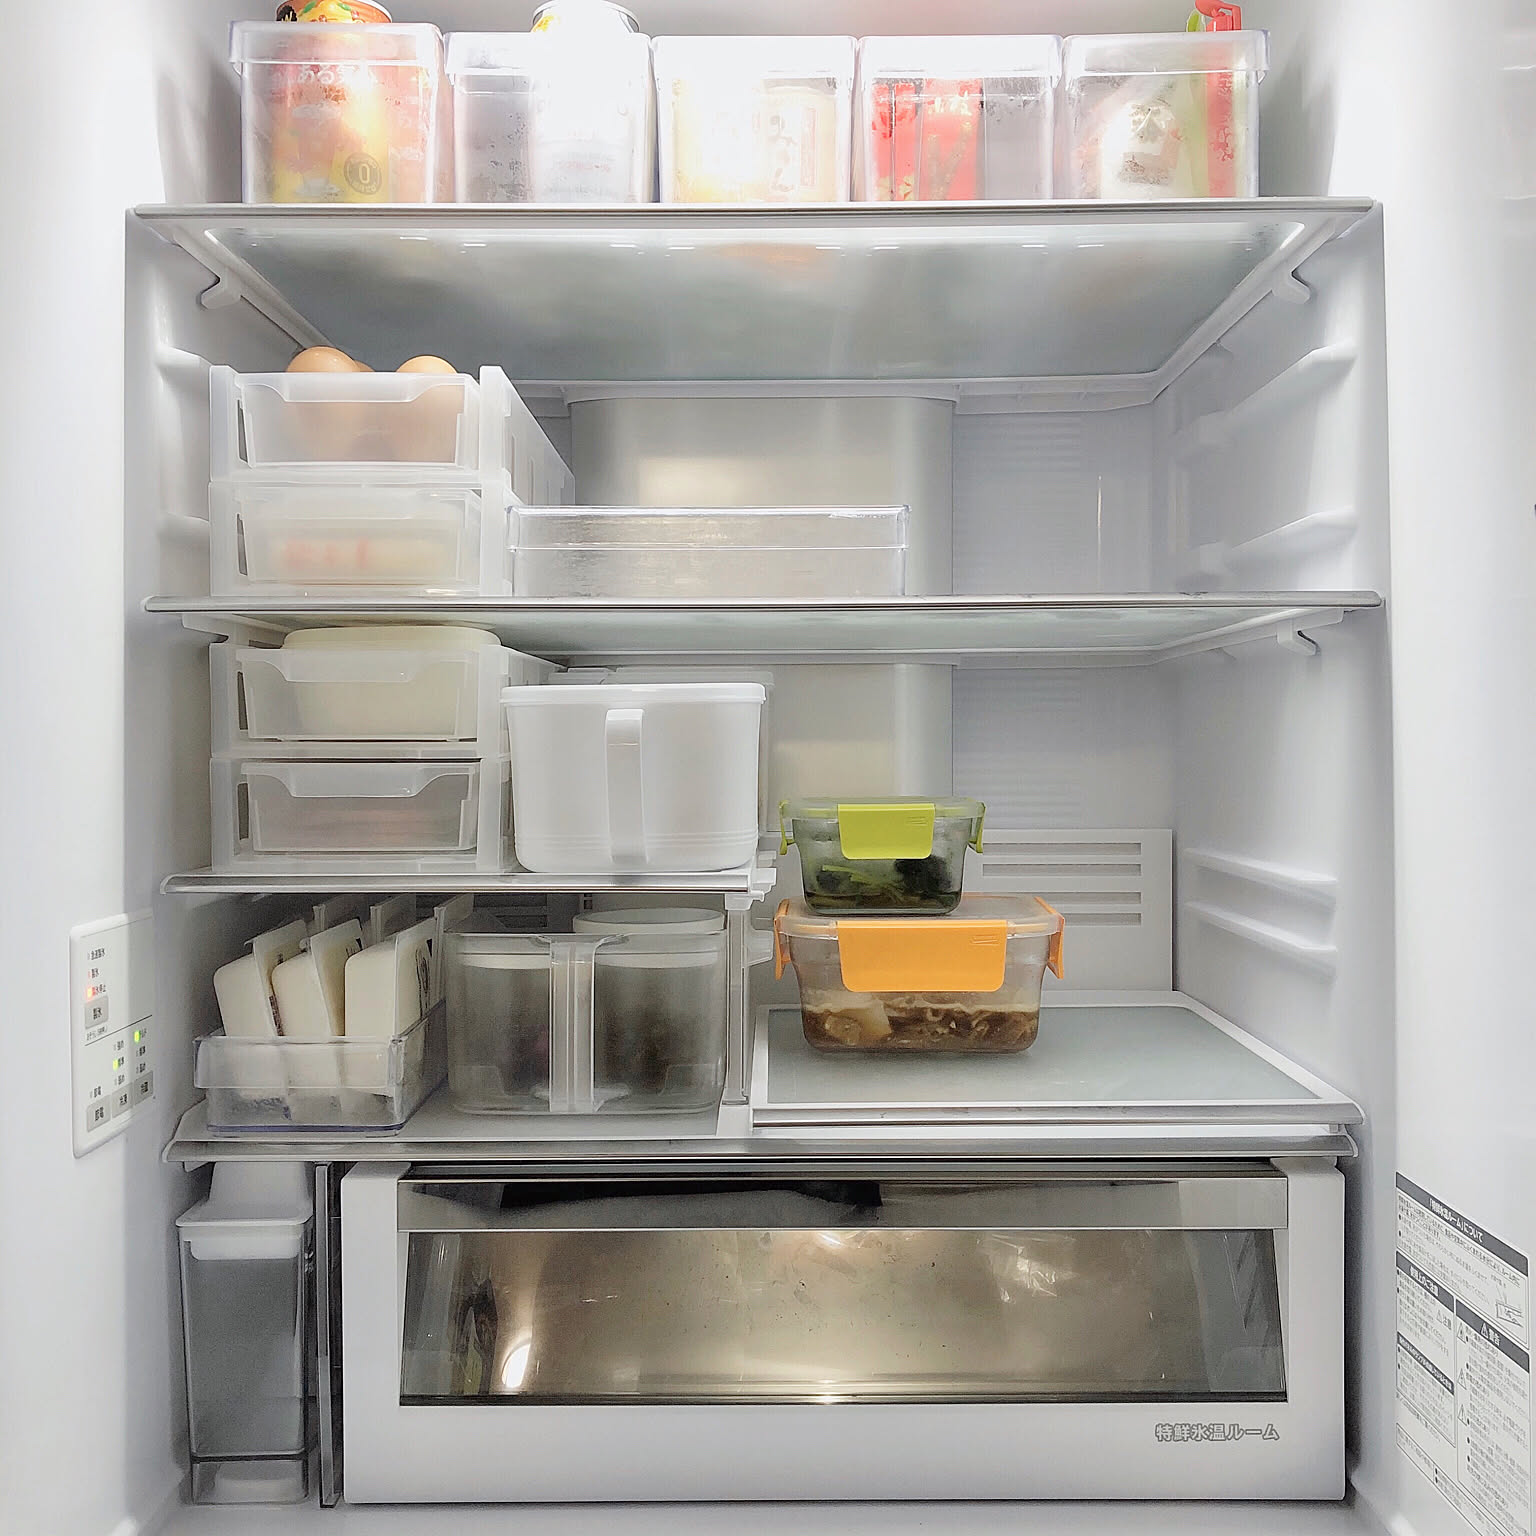 大掃除のついでに見直すのがおすすめ 冷蔵庫の収納方法 Roomclip Mag 暮らしとインテリアのwebマガジン